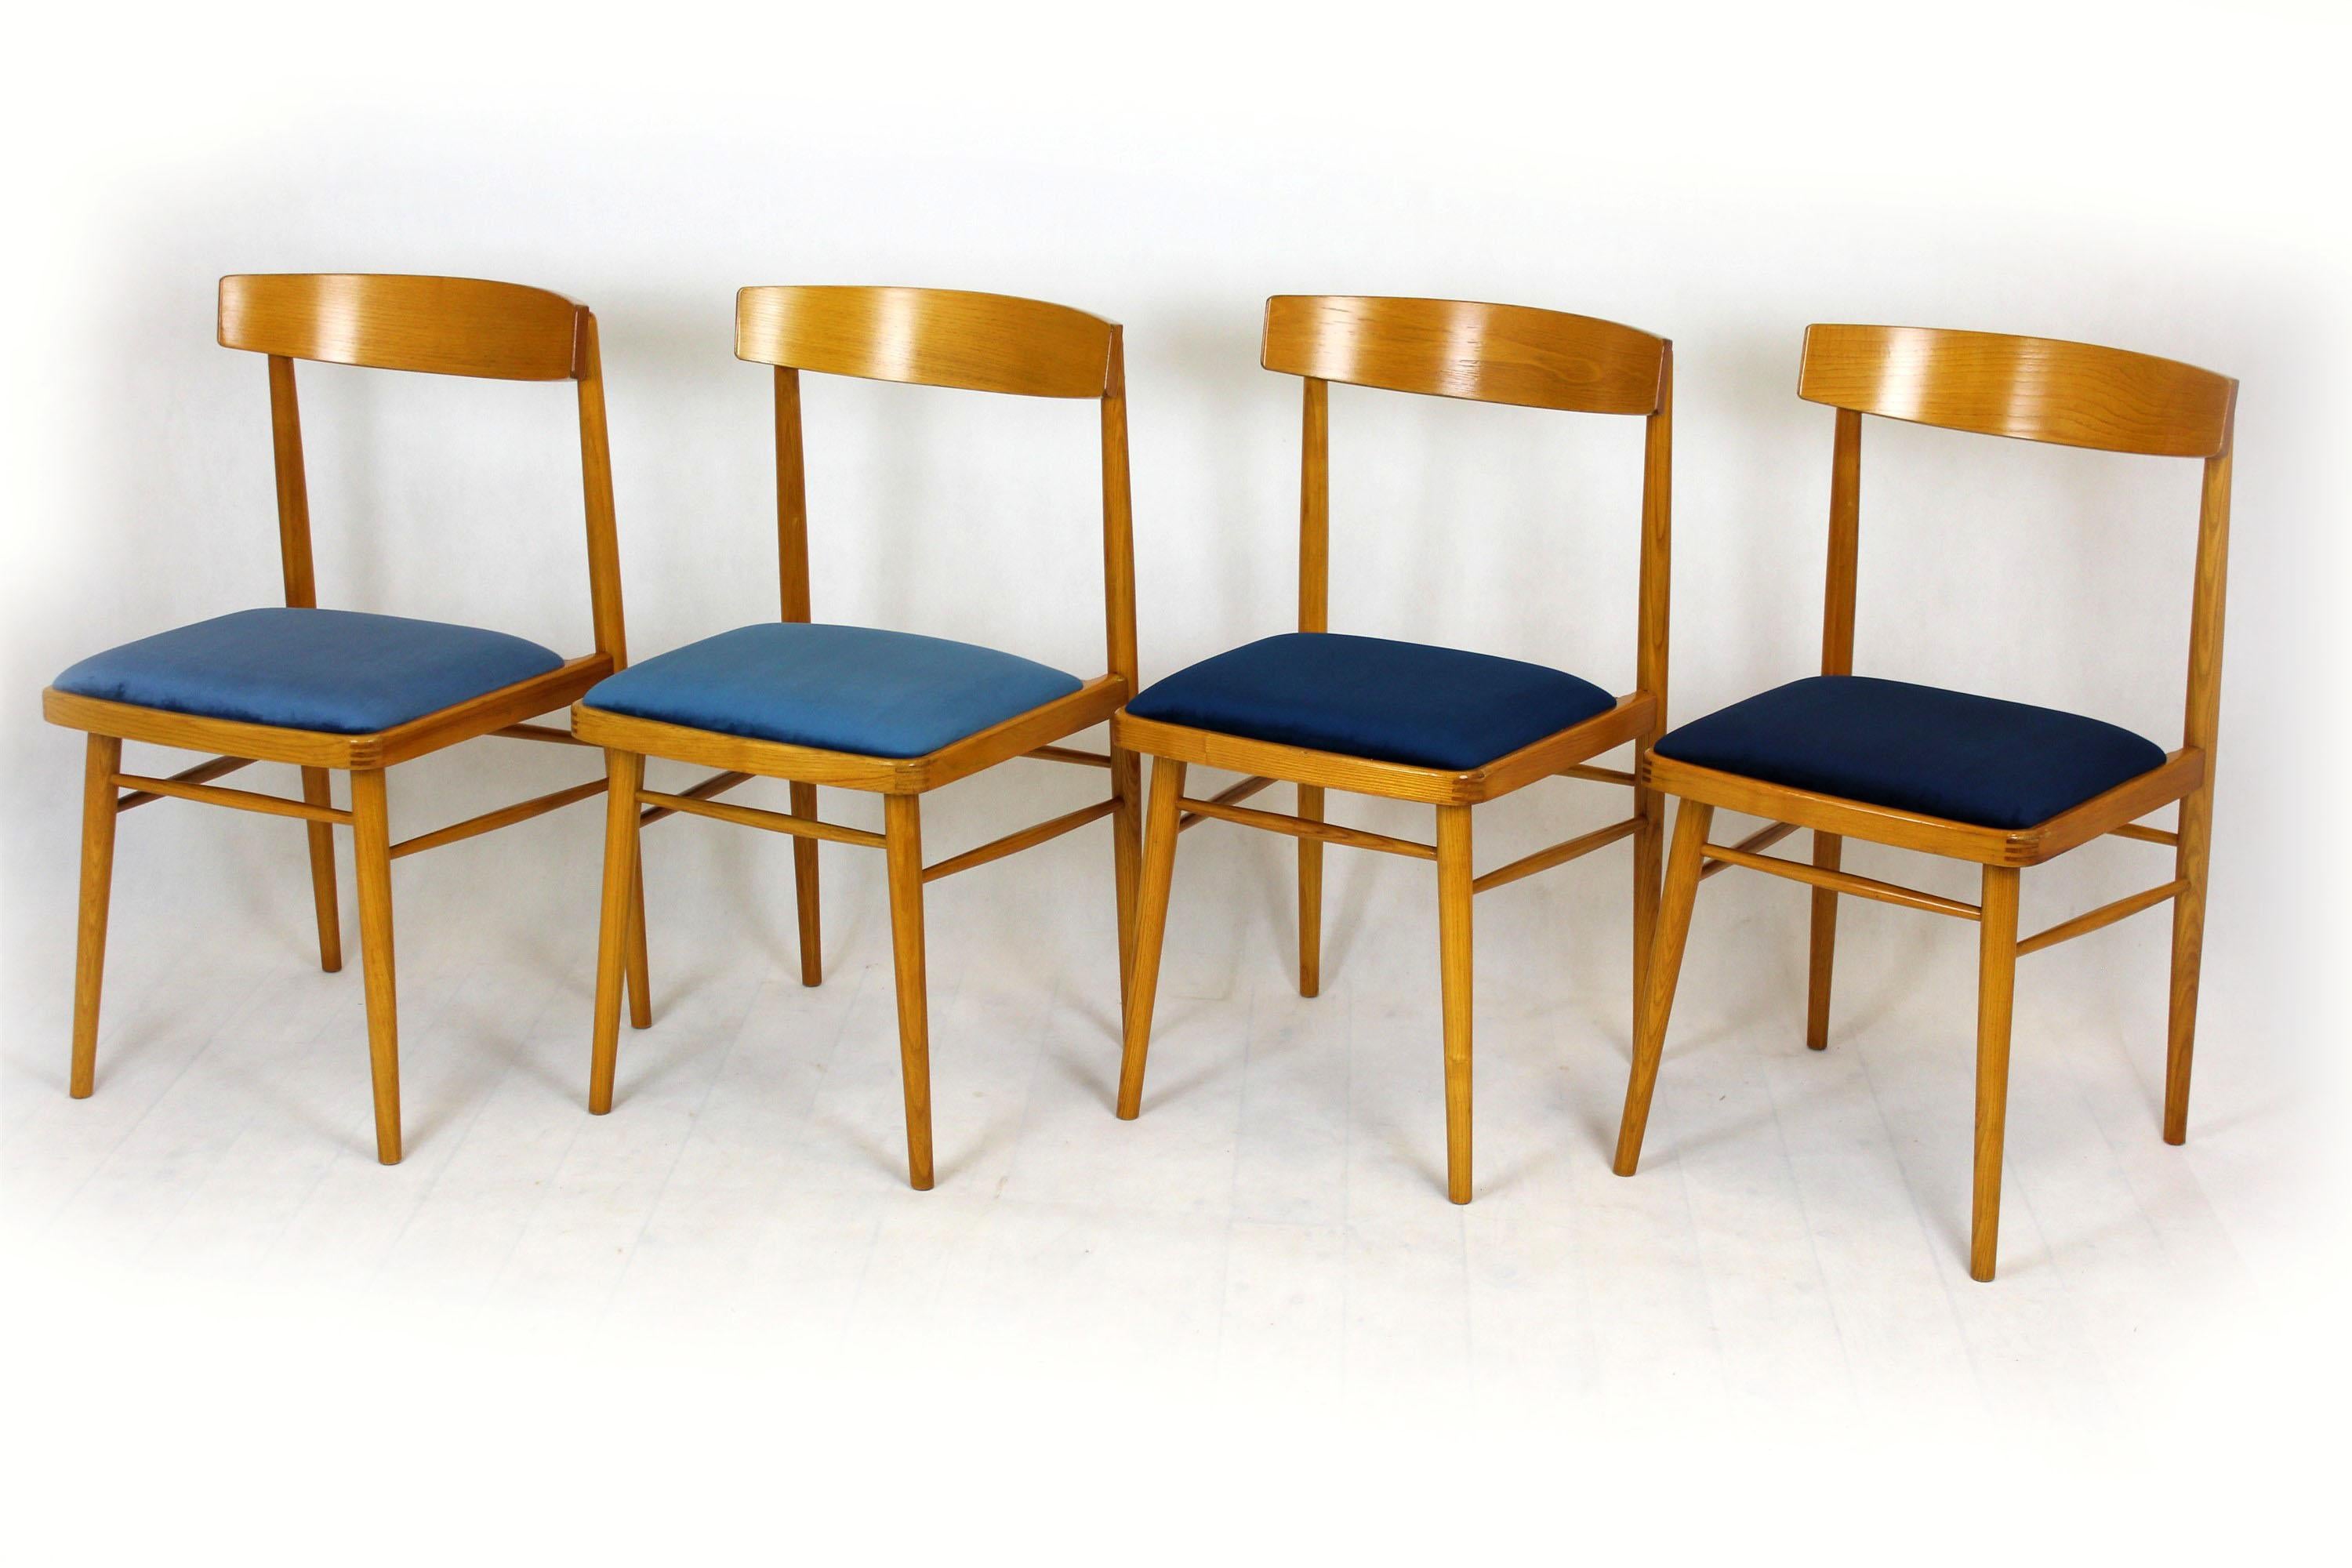 Dieses Set aus vier Eschenstühlen wurde in den 1960er Jahren von Ton (ehemals Thonet) hergestellt. Die Sitze wurden aufgearbeitet und mit hochwertigem Stoff in vier leicht unterschiedlichen Blautönen bezogen.
  